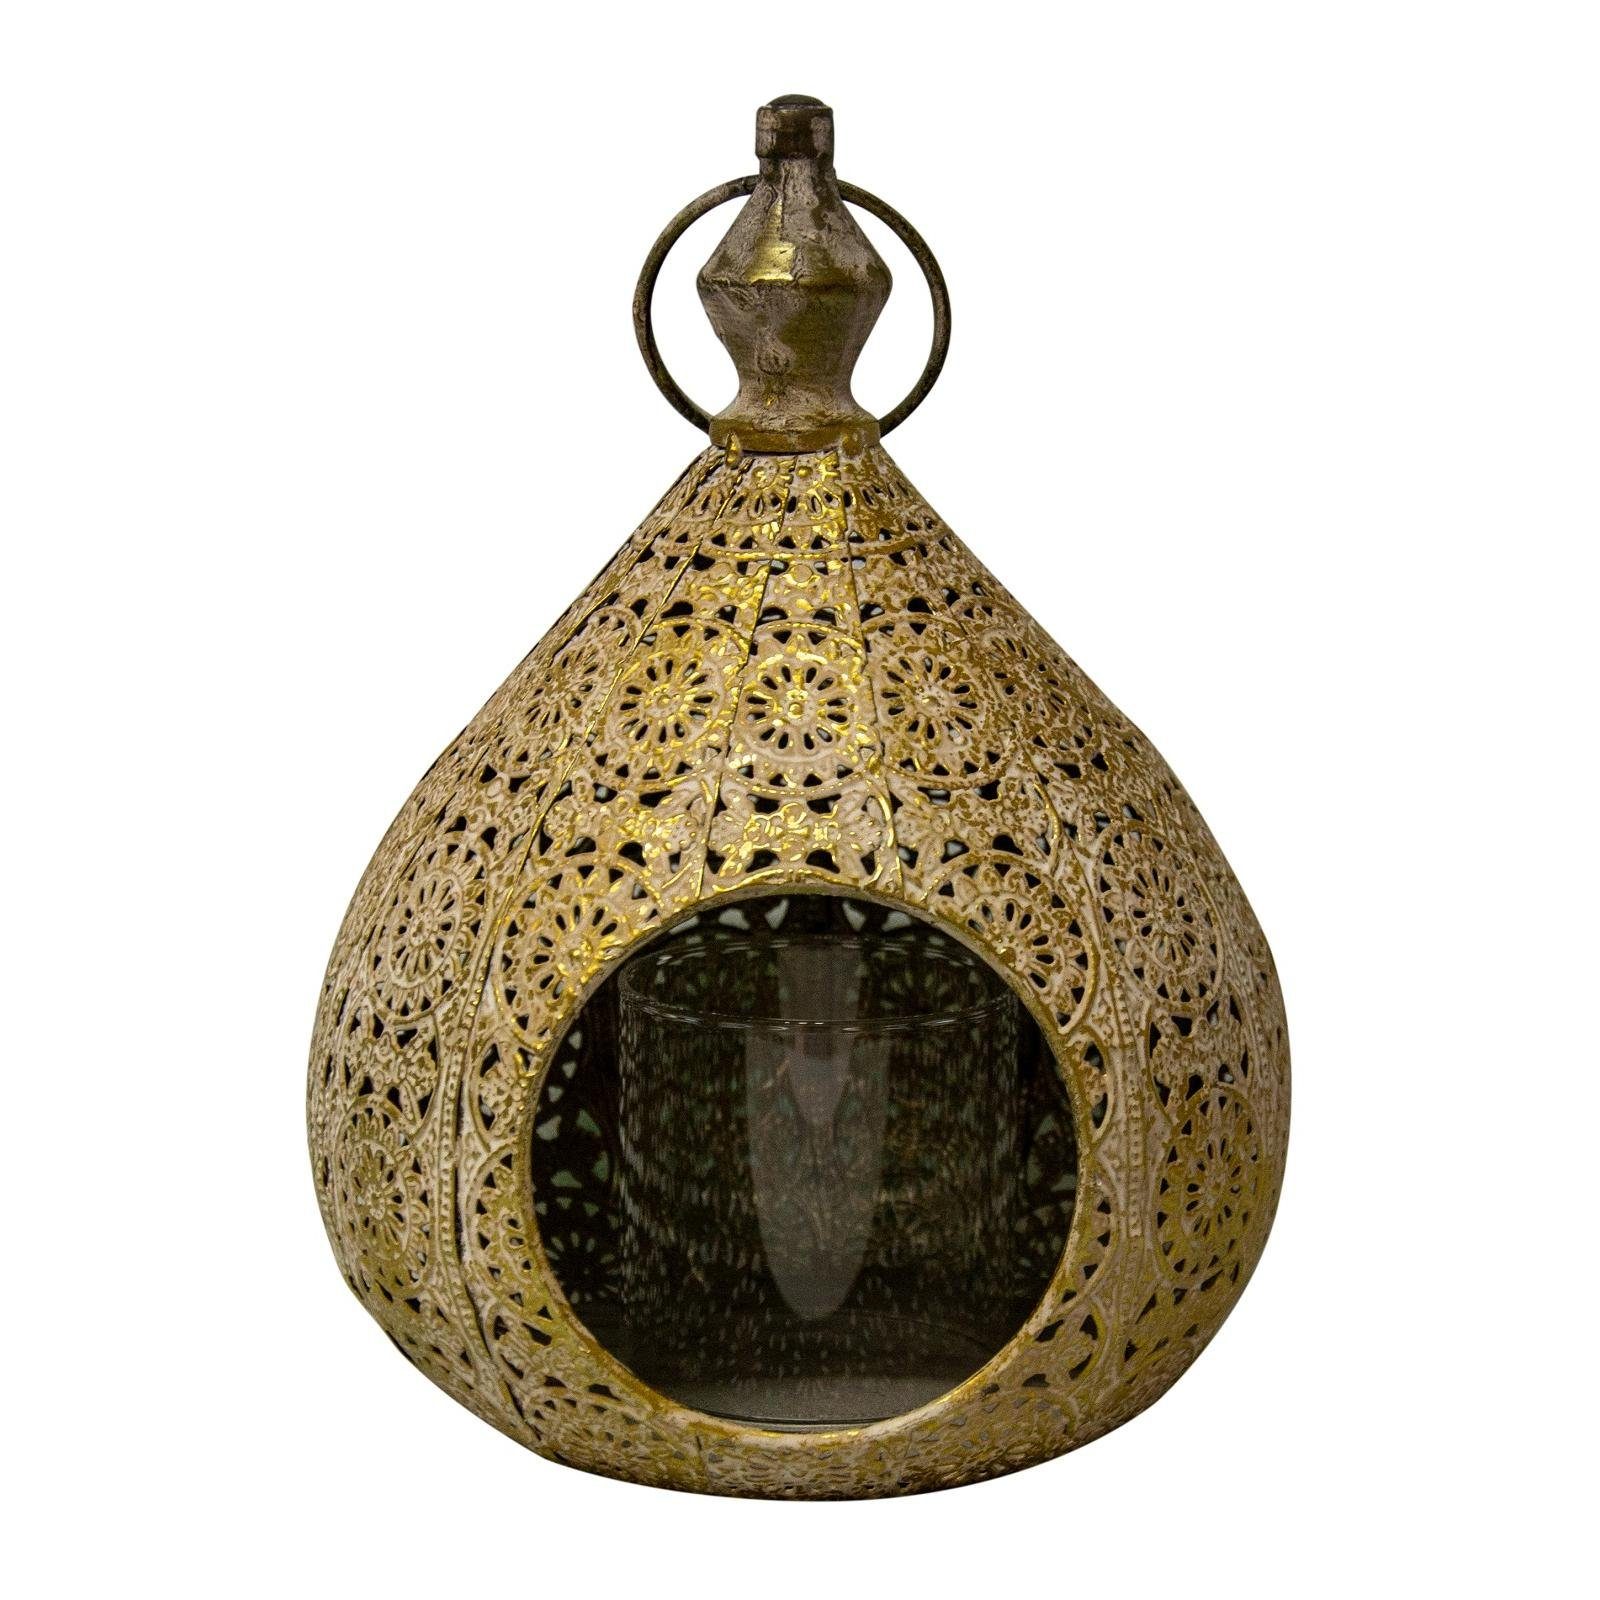 Parts4Living Hängewindlicht Metall Windlicht zum Aufhängen Teelichthalter mit schönem Lochmuster gold antik gebürstet 20x18,5x25,5 cm, im orientalischen Stil